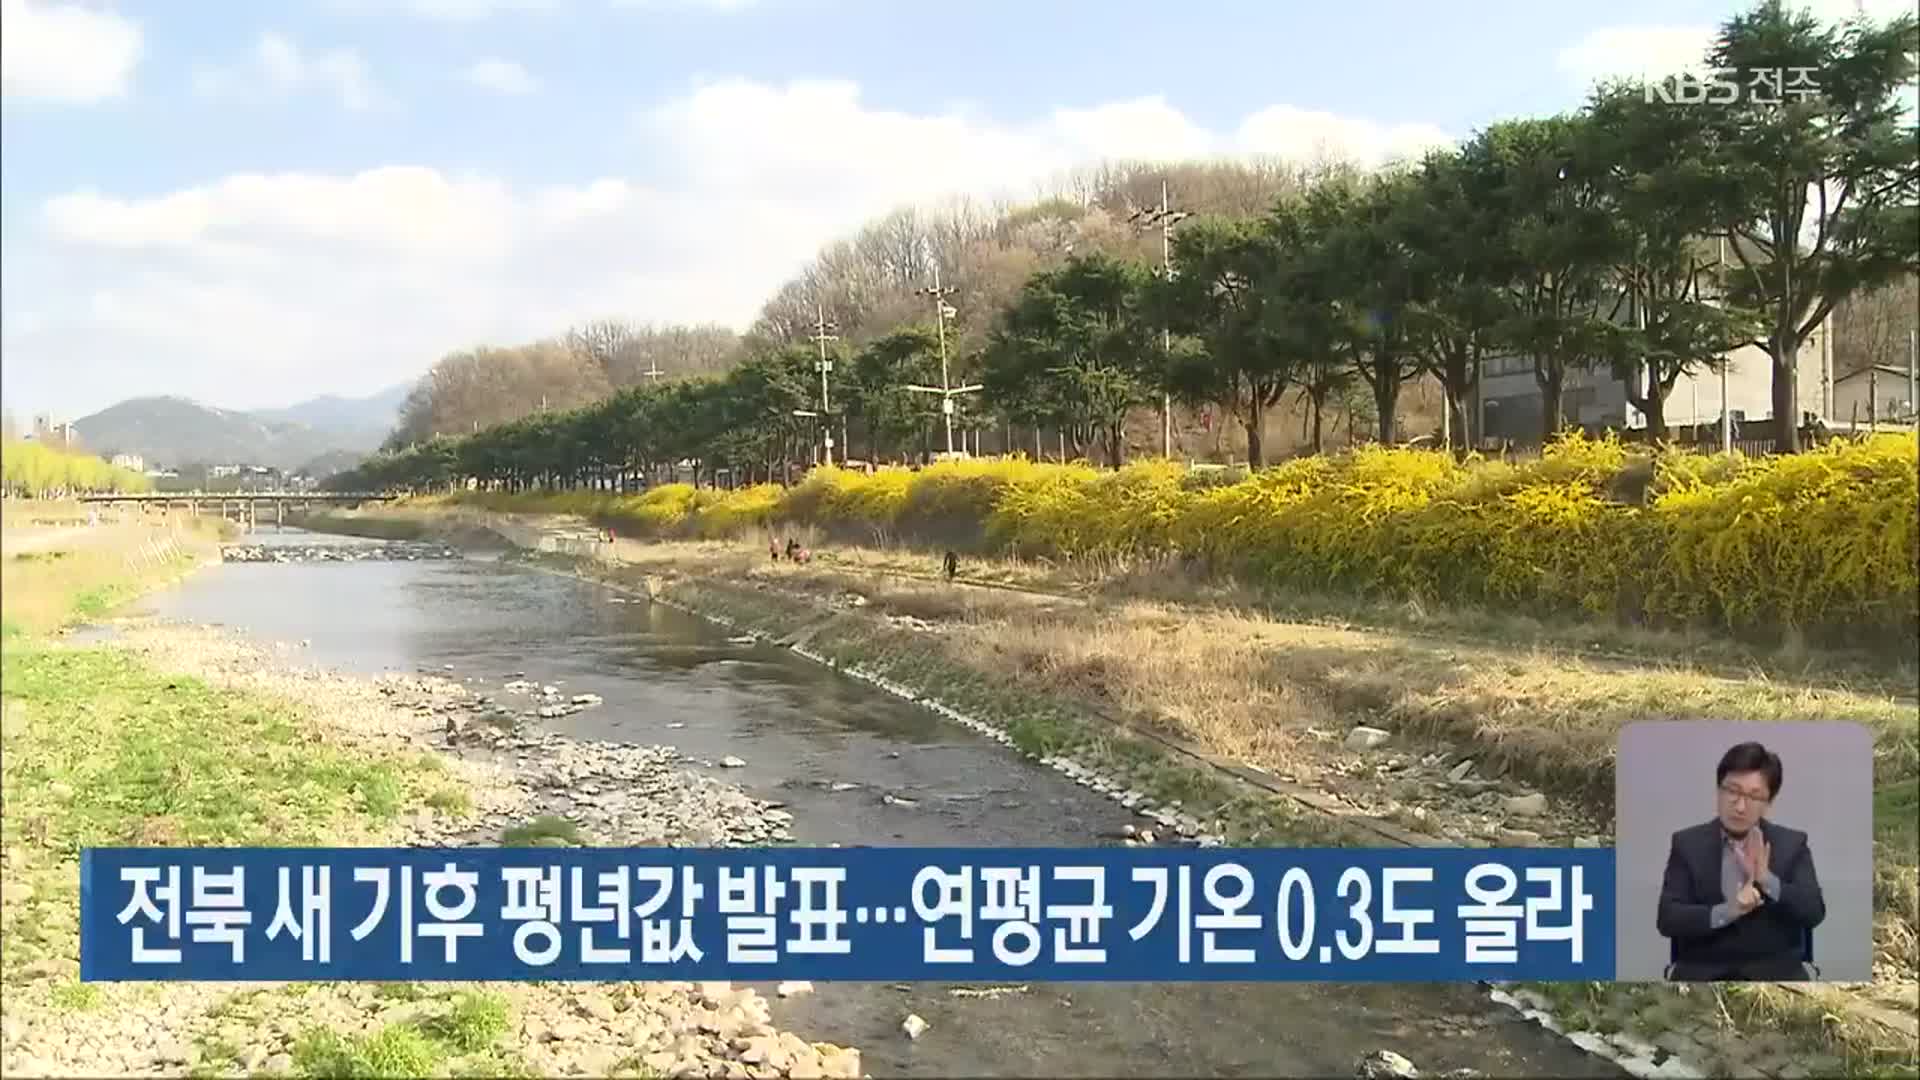 전북 새 기후 평년값 발표…연평균 기온 0.3도 올라